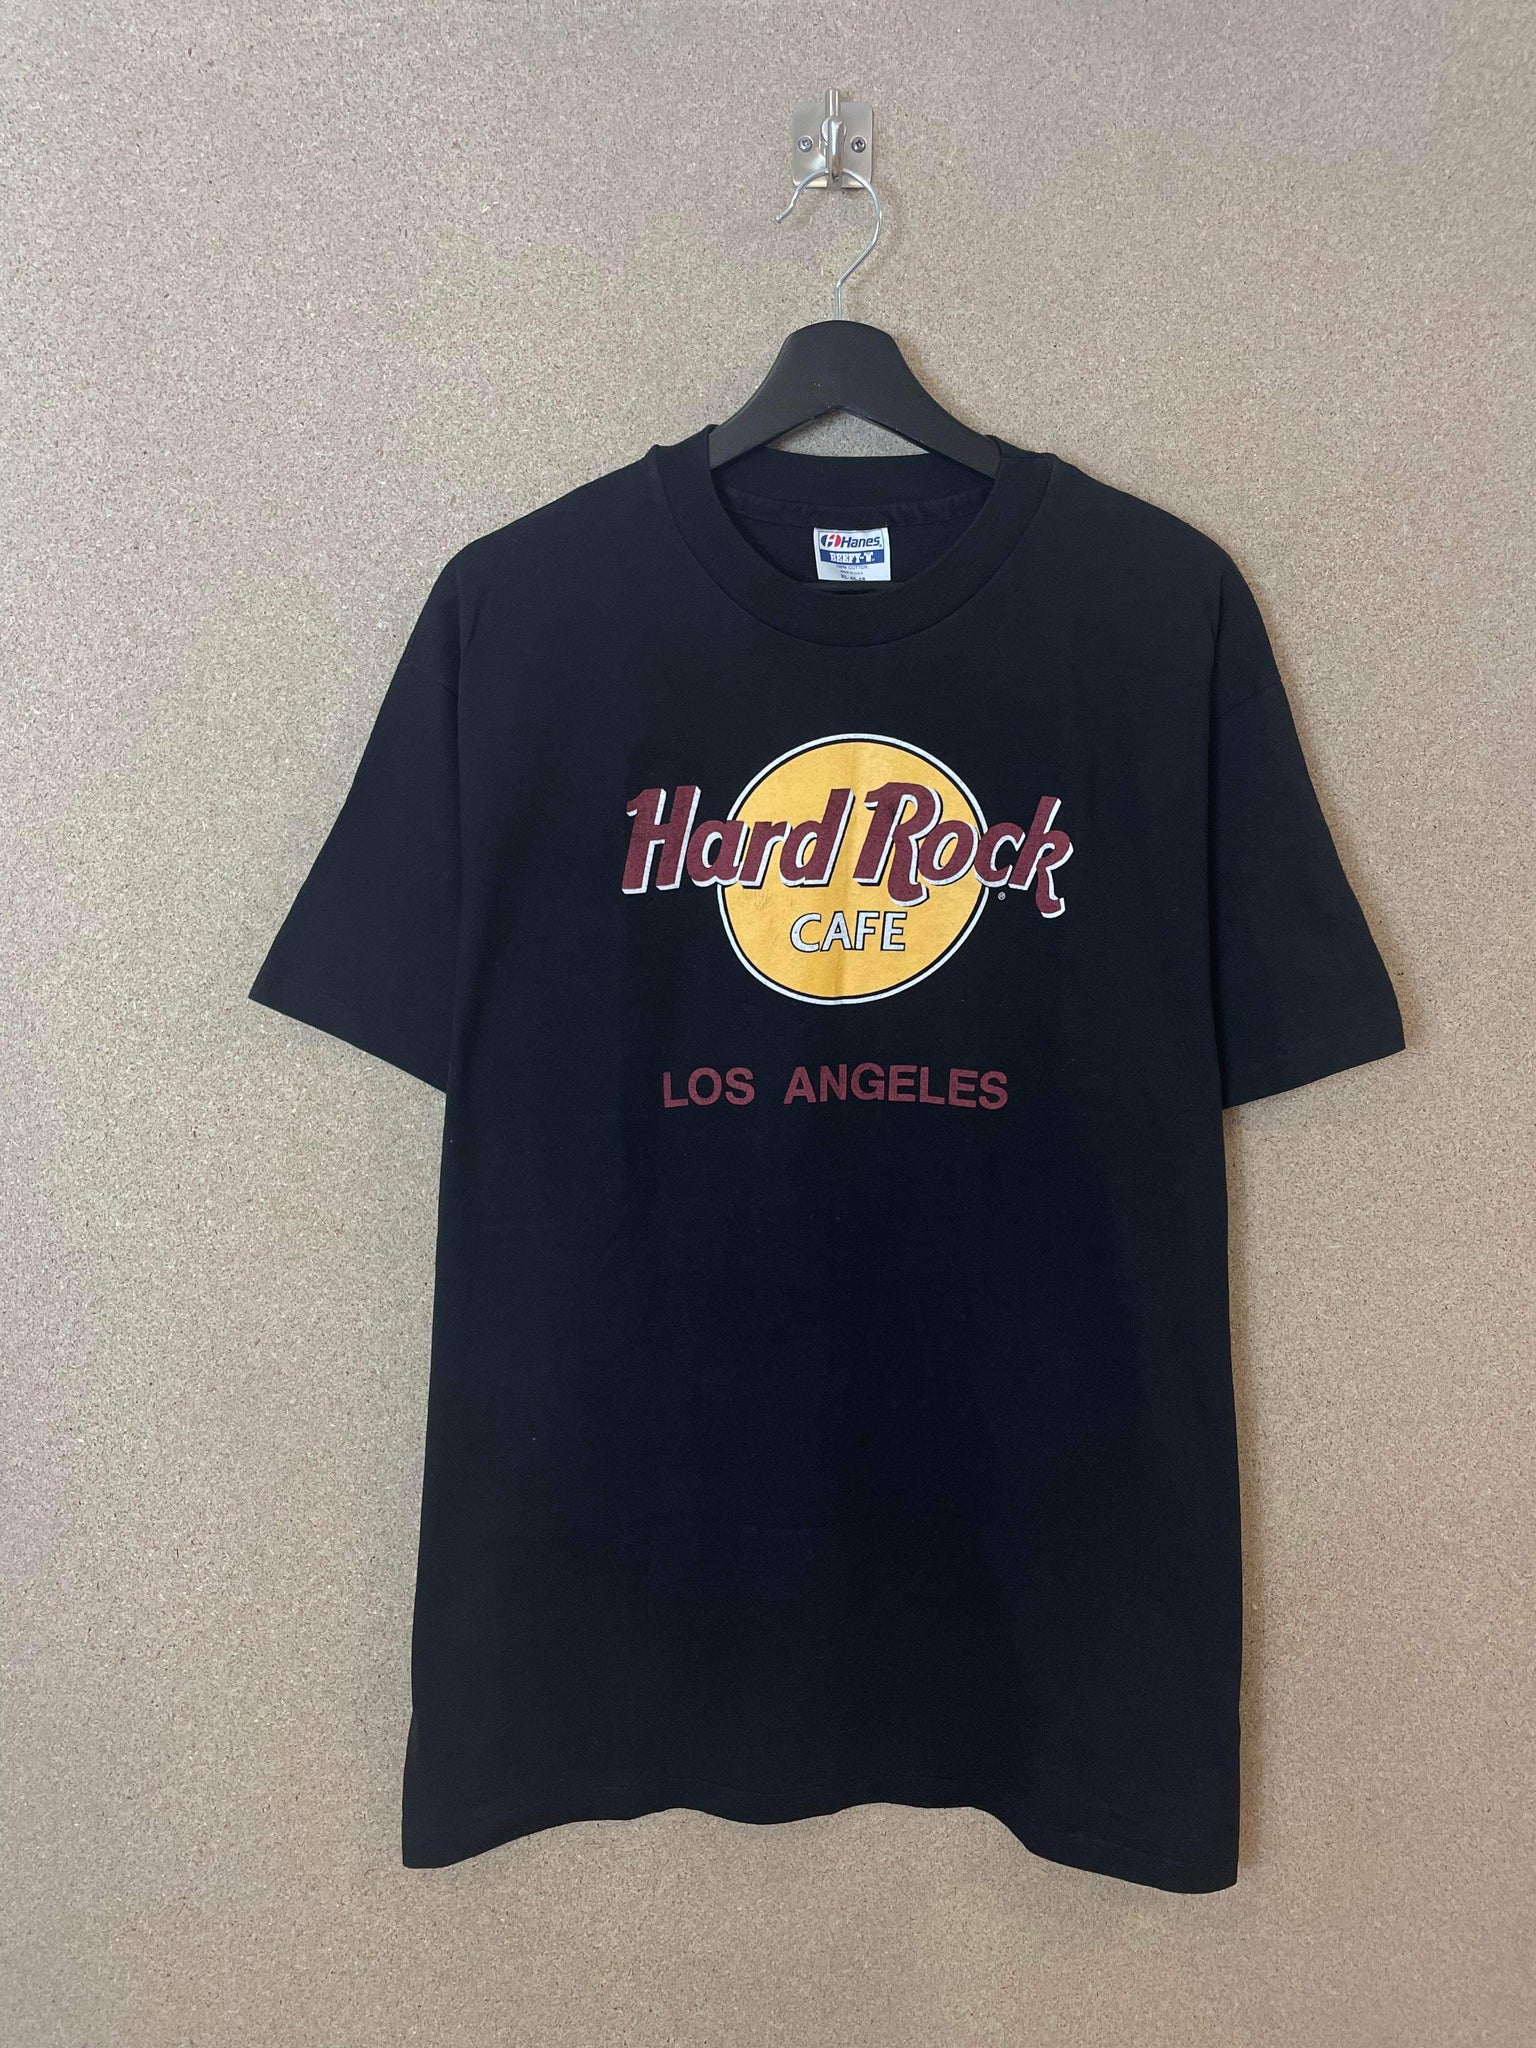 Vintage Hard Rock Café Los Angeles 90s Tee - XL